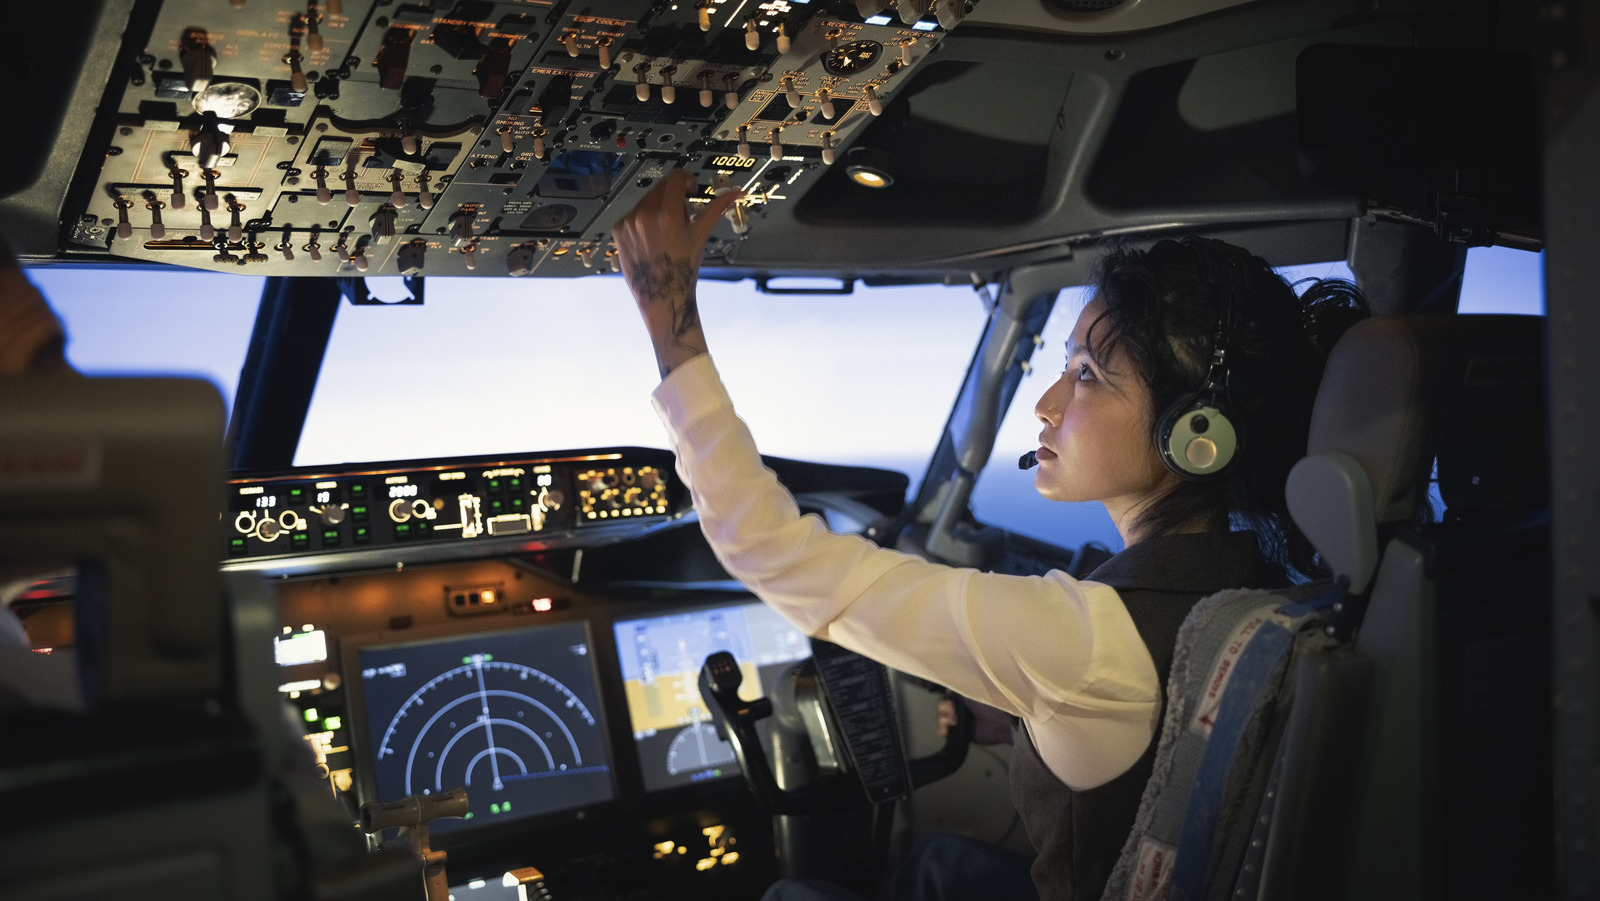 ¿Qué sucede cuando los pilotos comerciales experimentan problemas mecánicos en pleno vuelo?